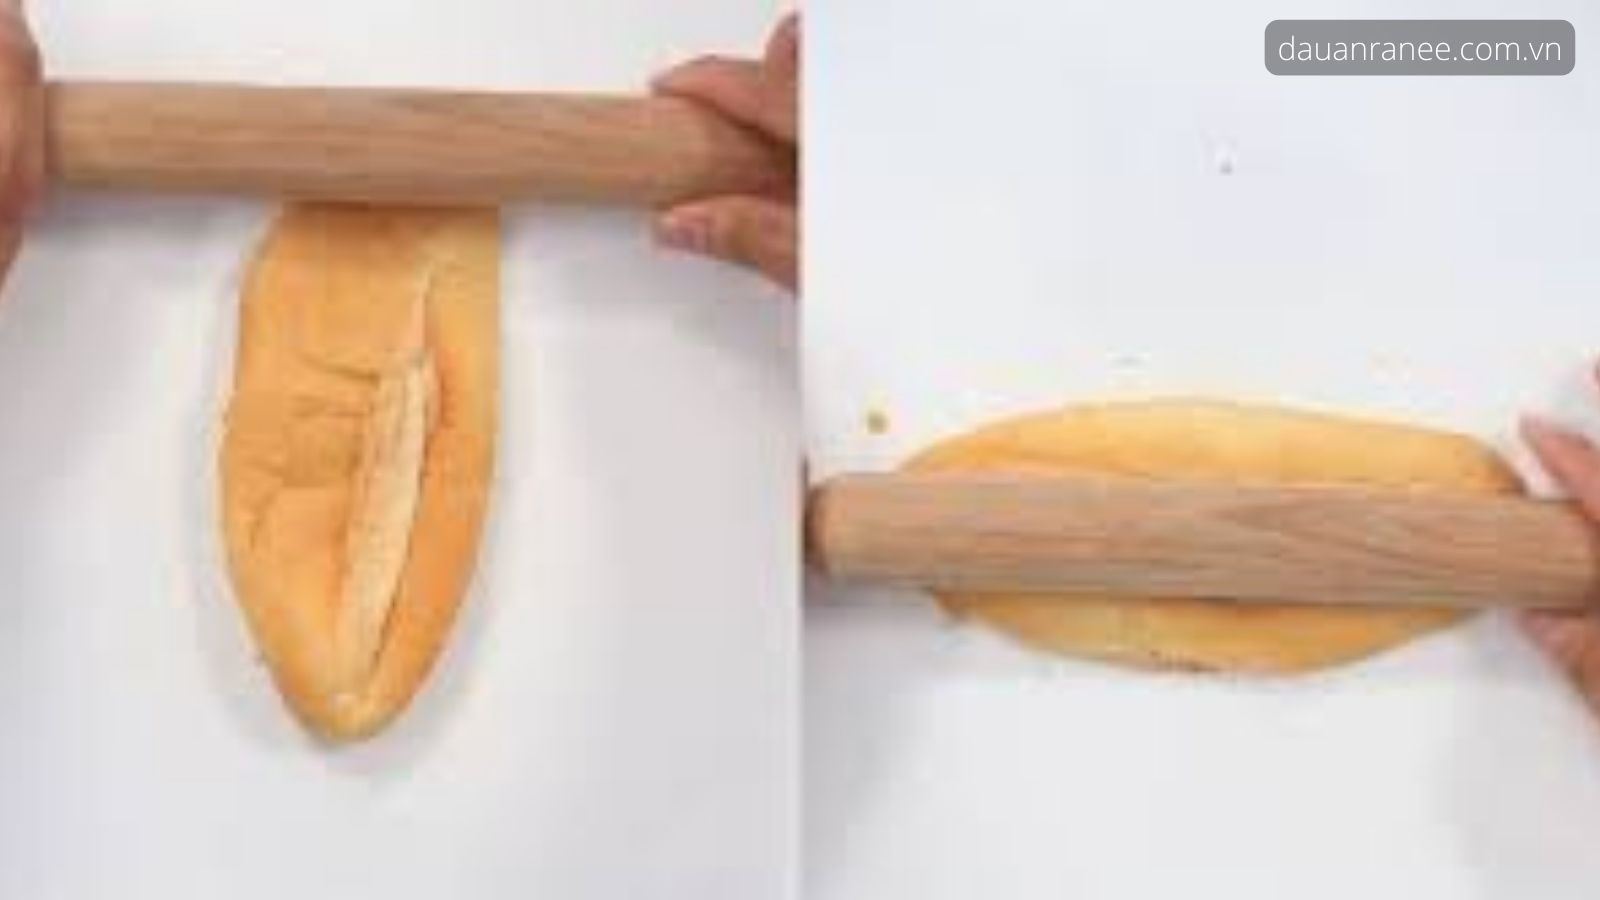 Sơ chế và áp chảo bánh mì